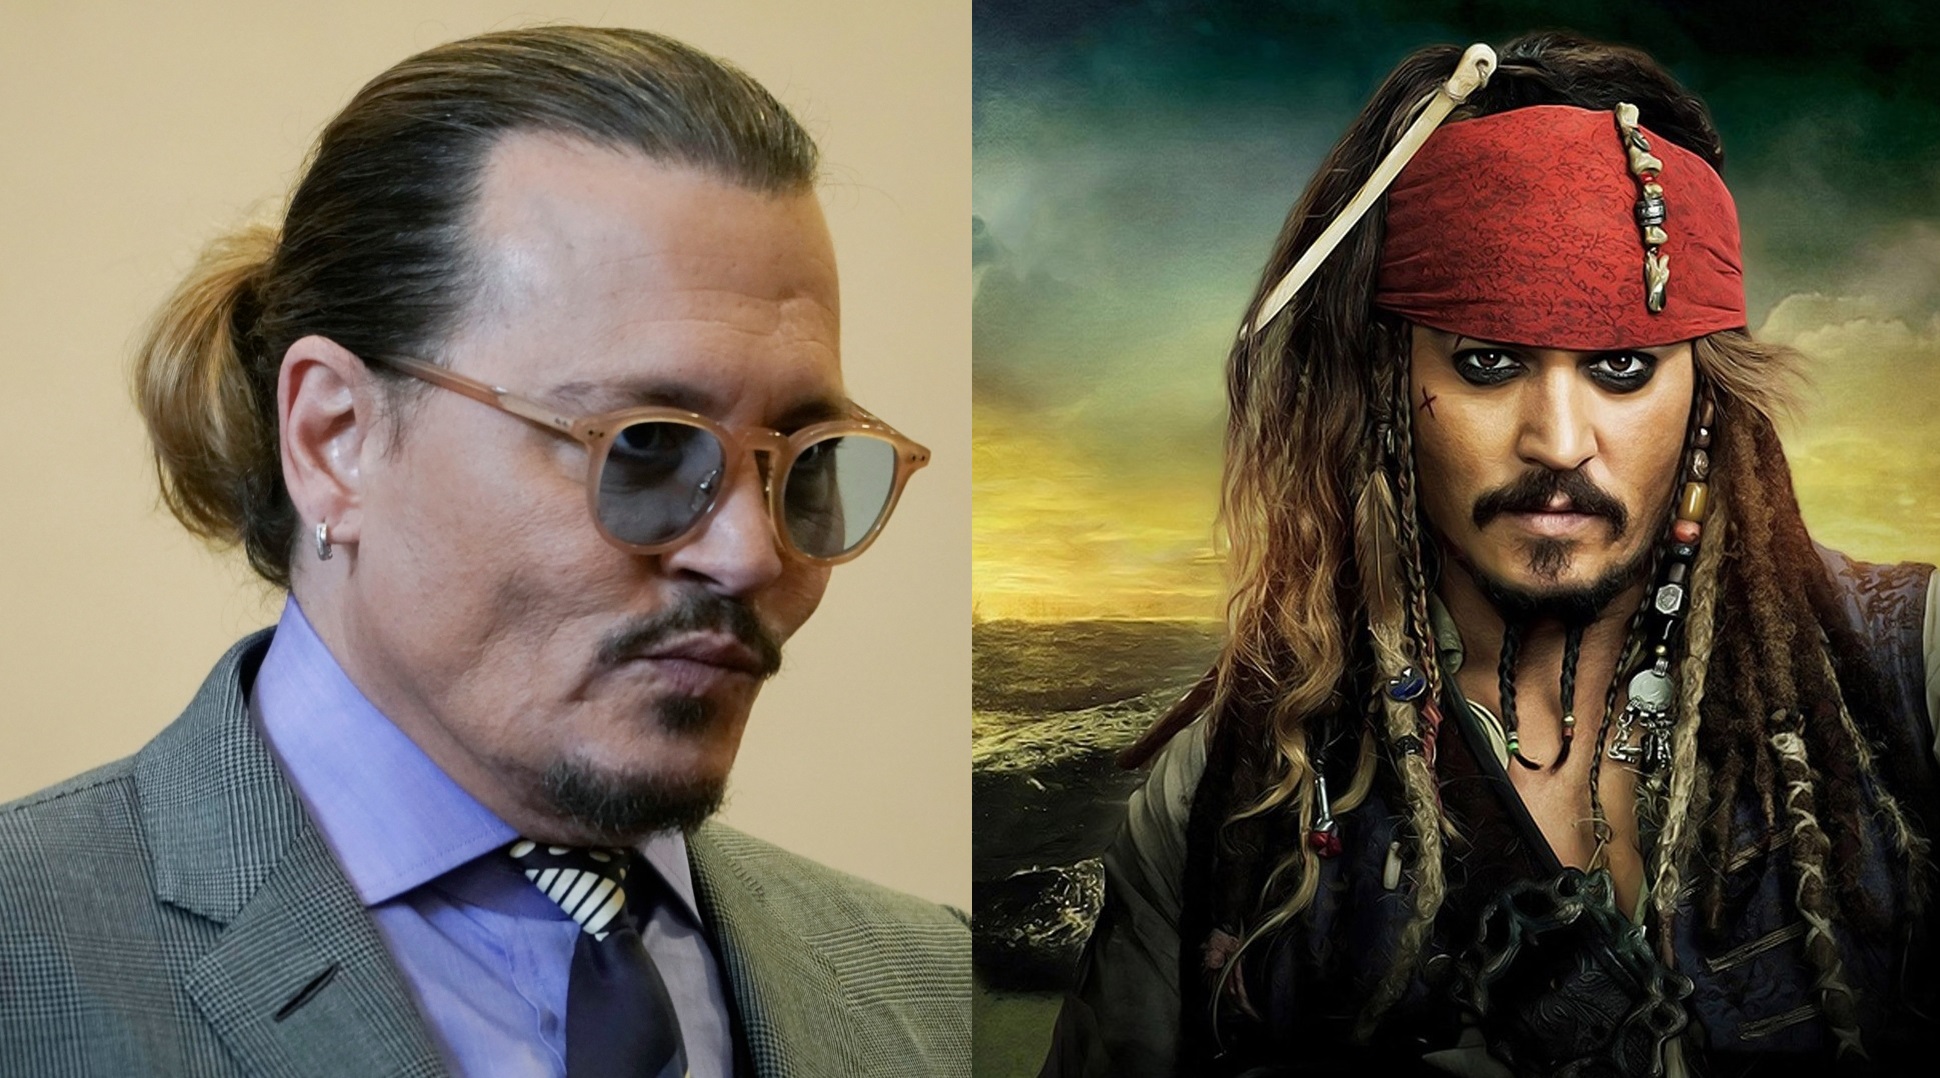 Tzoni Ntep: Aitima gia tin epistrofi tou os «Captain Jack Sparrow» stou